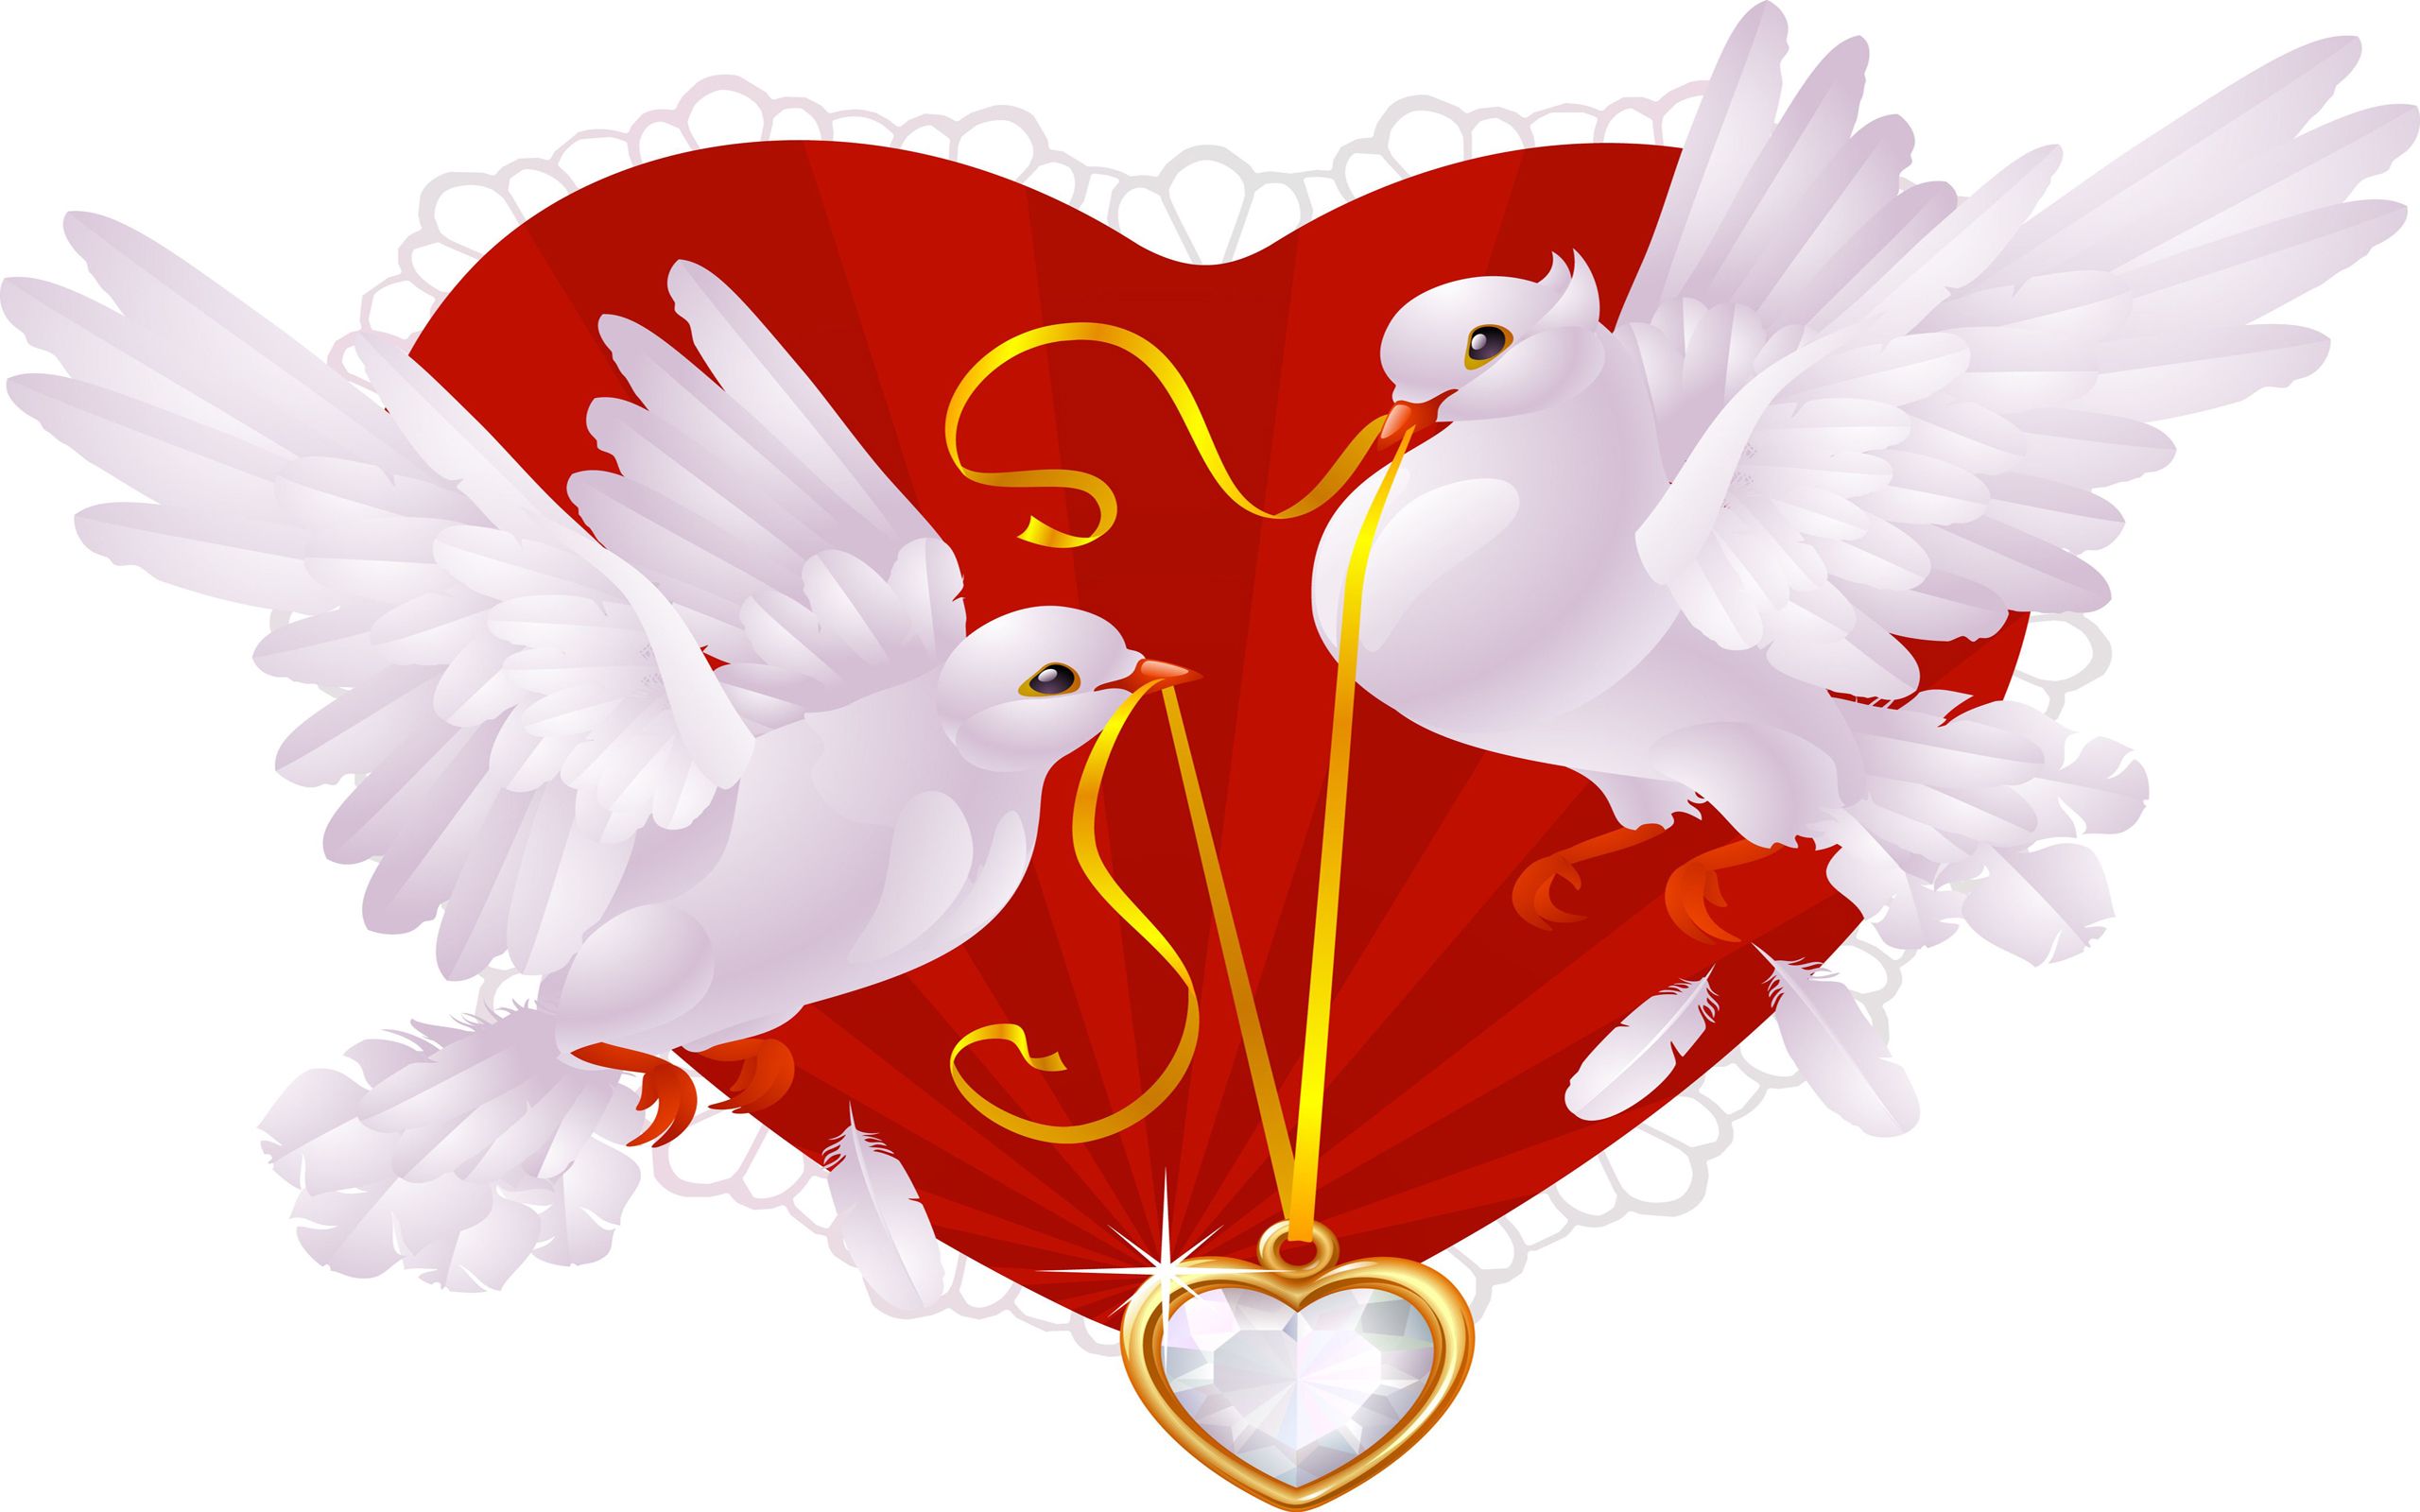 Скачать обои бесплатно Сердце, День Святого Валентина, Ожерелье, Праздничные, Голубиные картинка на рабочий стол ПК